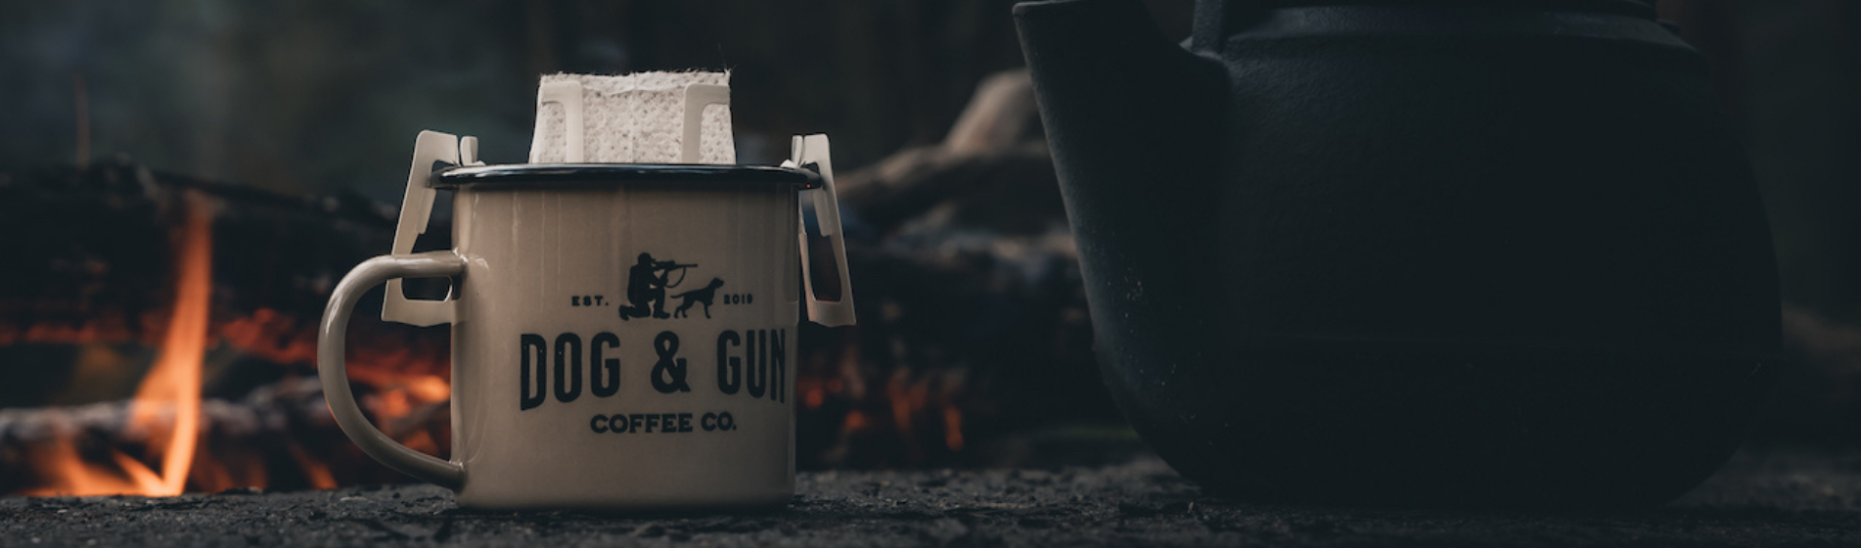 Dog & Gun Coffee in a Mug